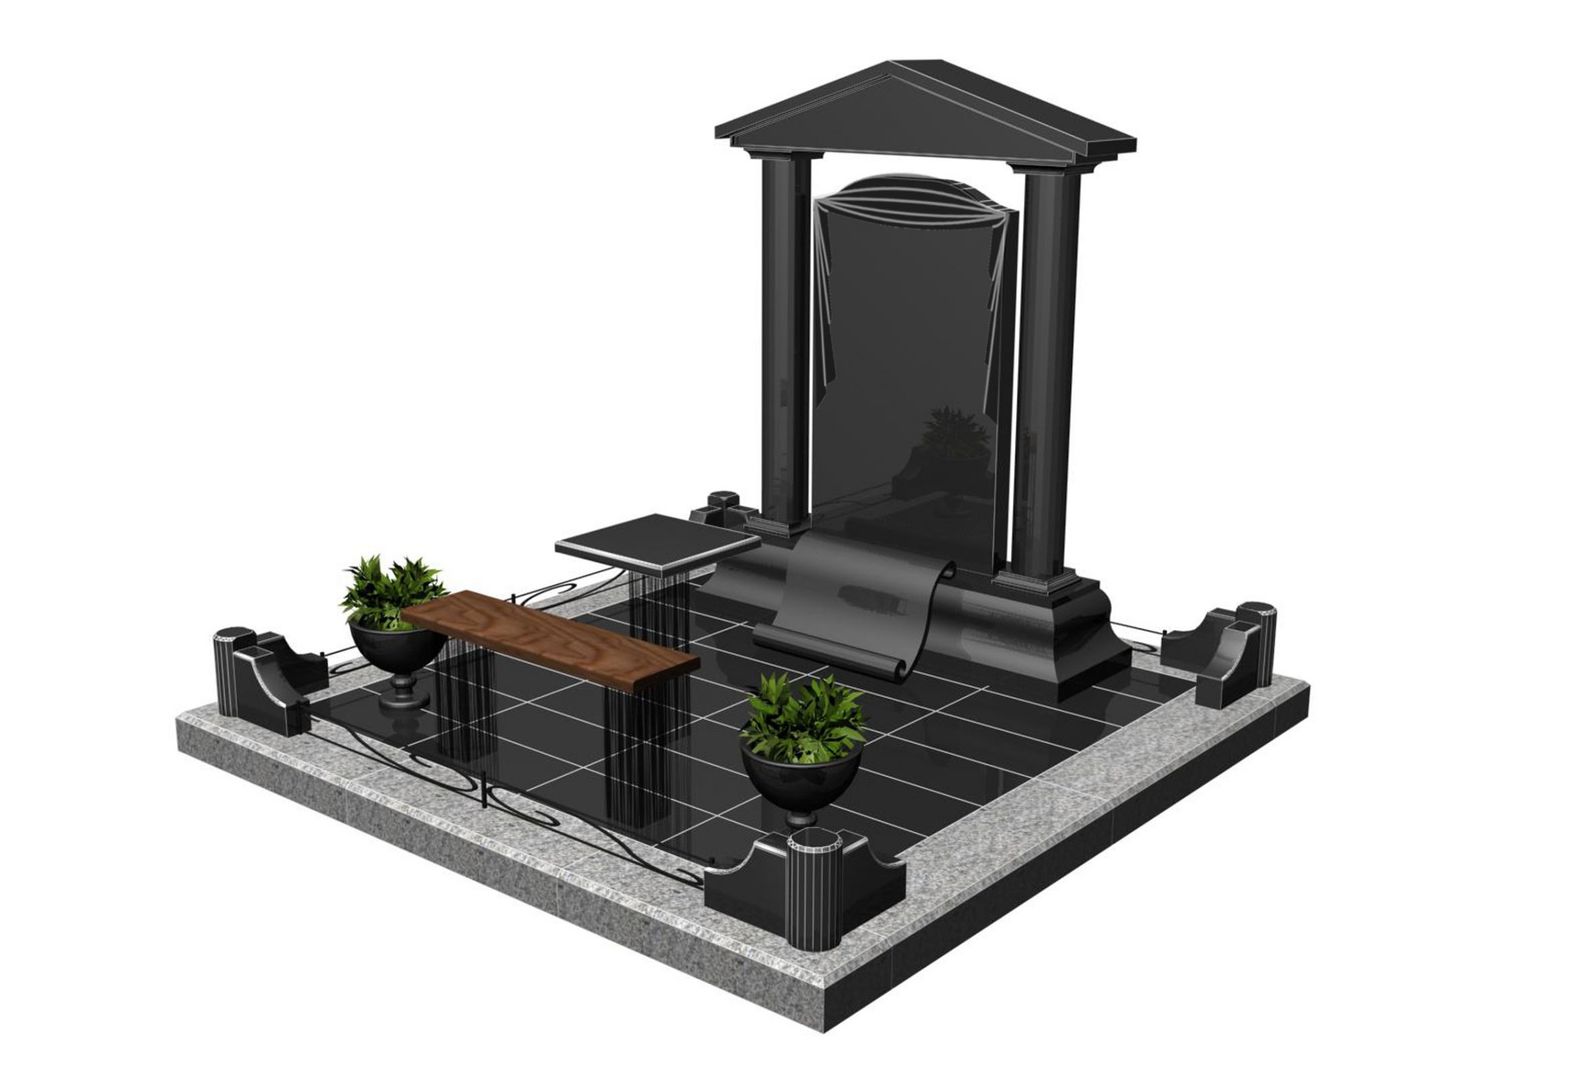 Памятники на могилу